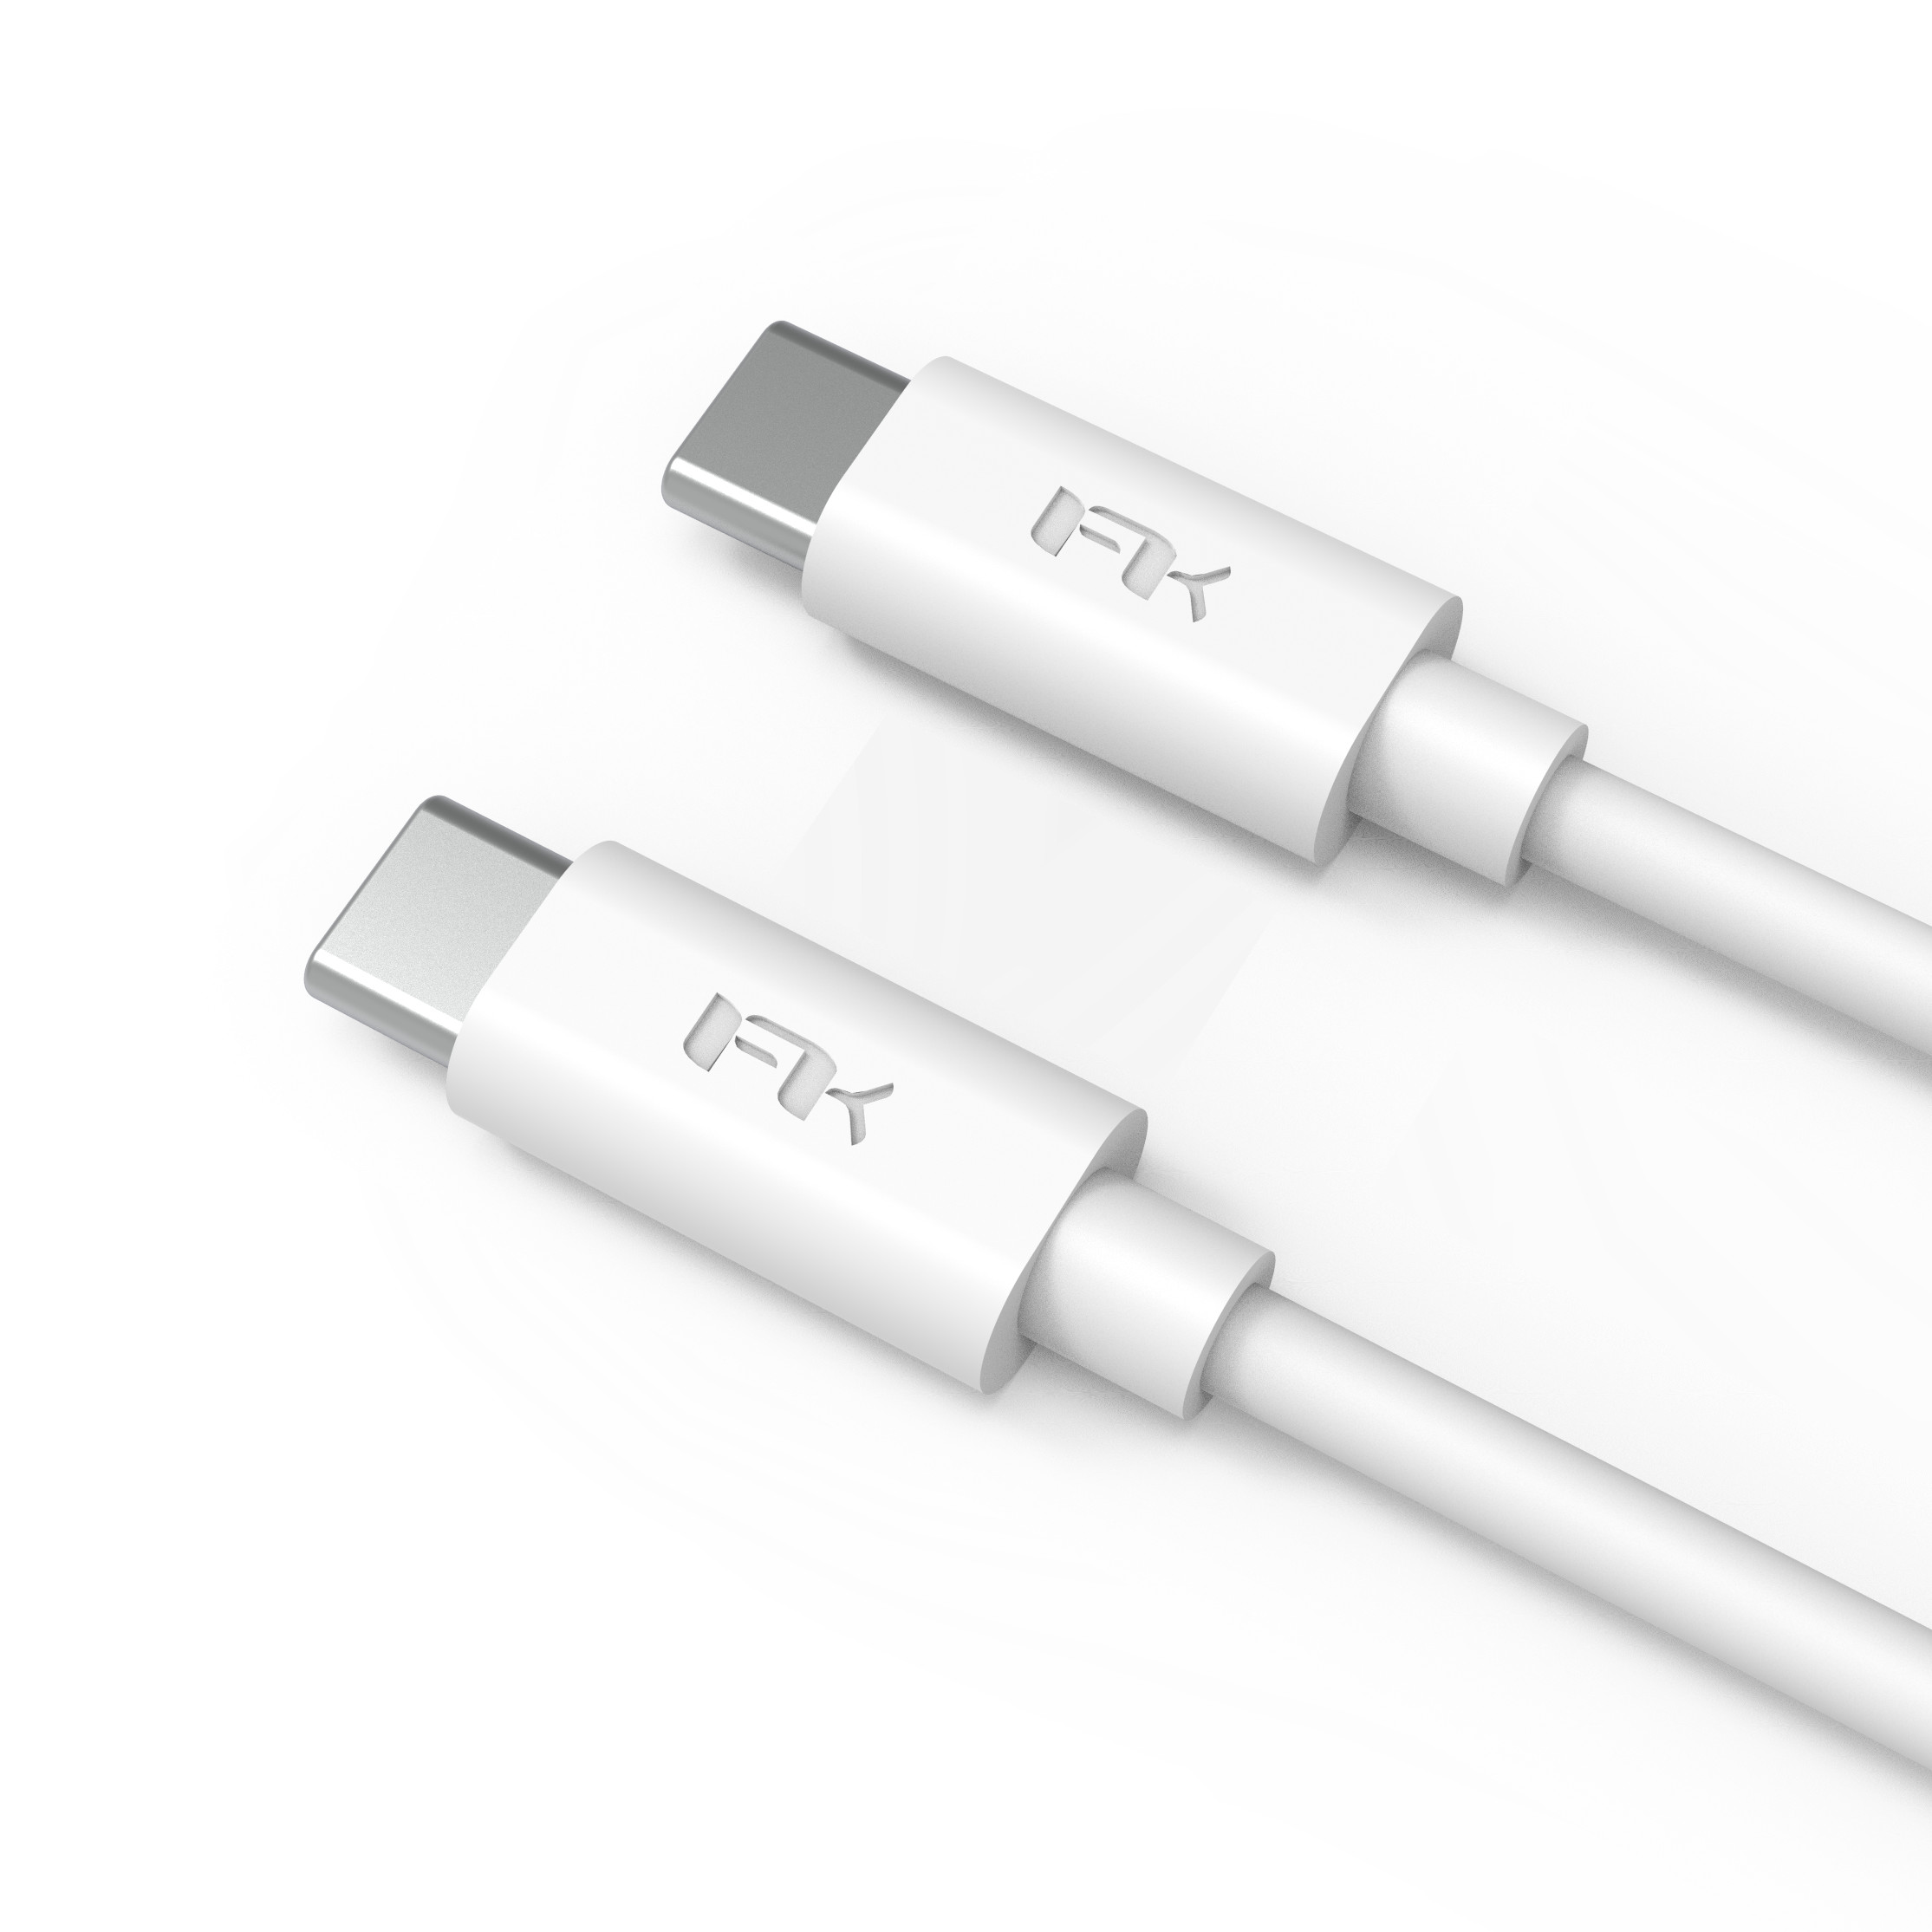 Dây Cáp Sạc USB Type-C to Type-C 2.0 Feeltek 1m2 - Hàng Chính Hãng